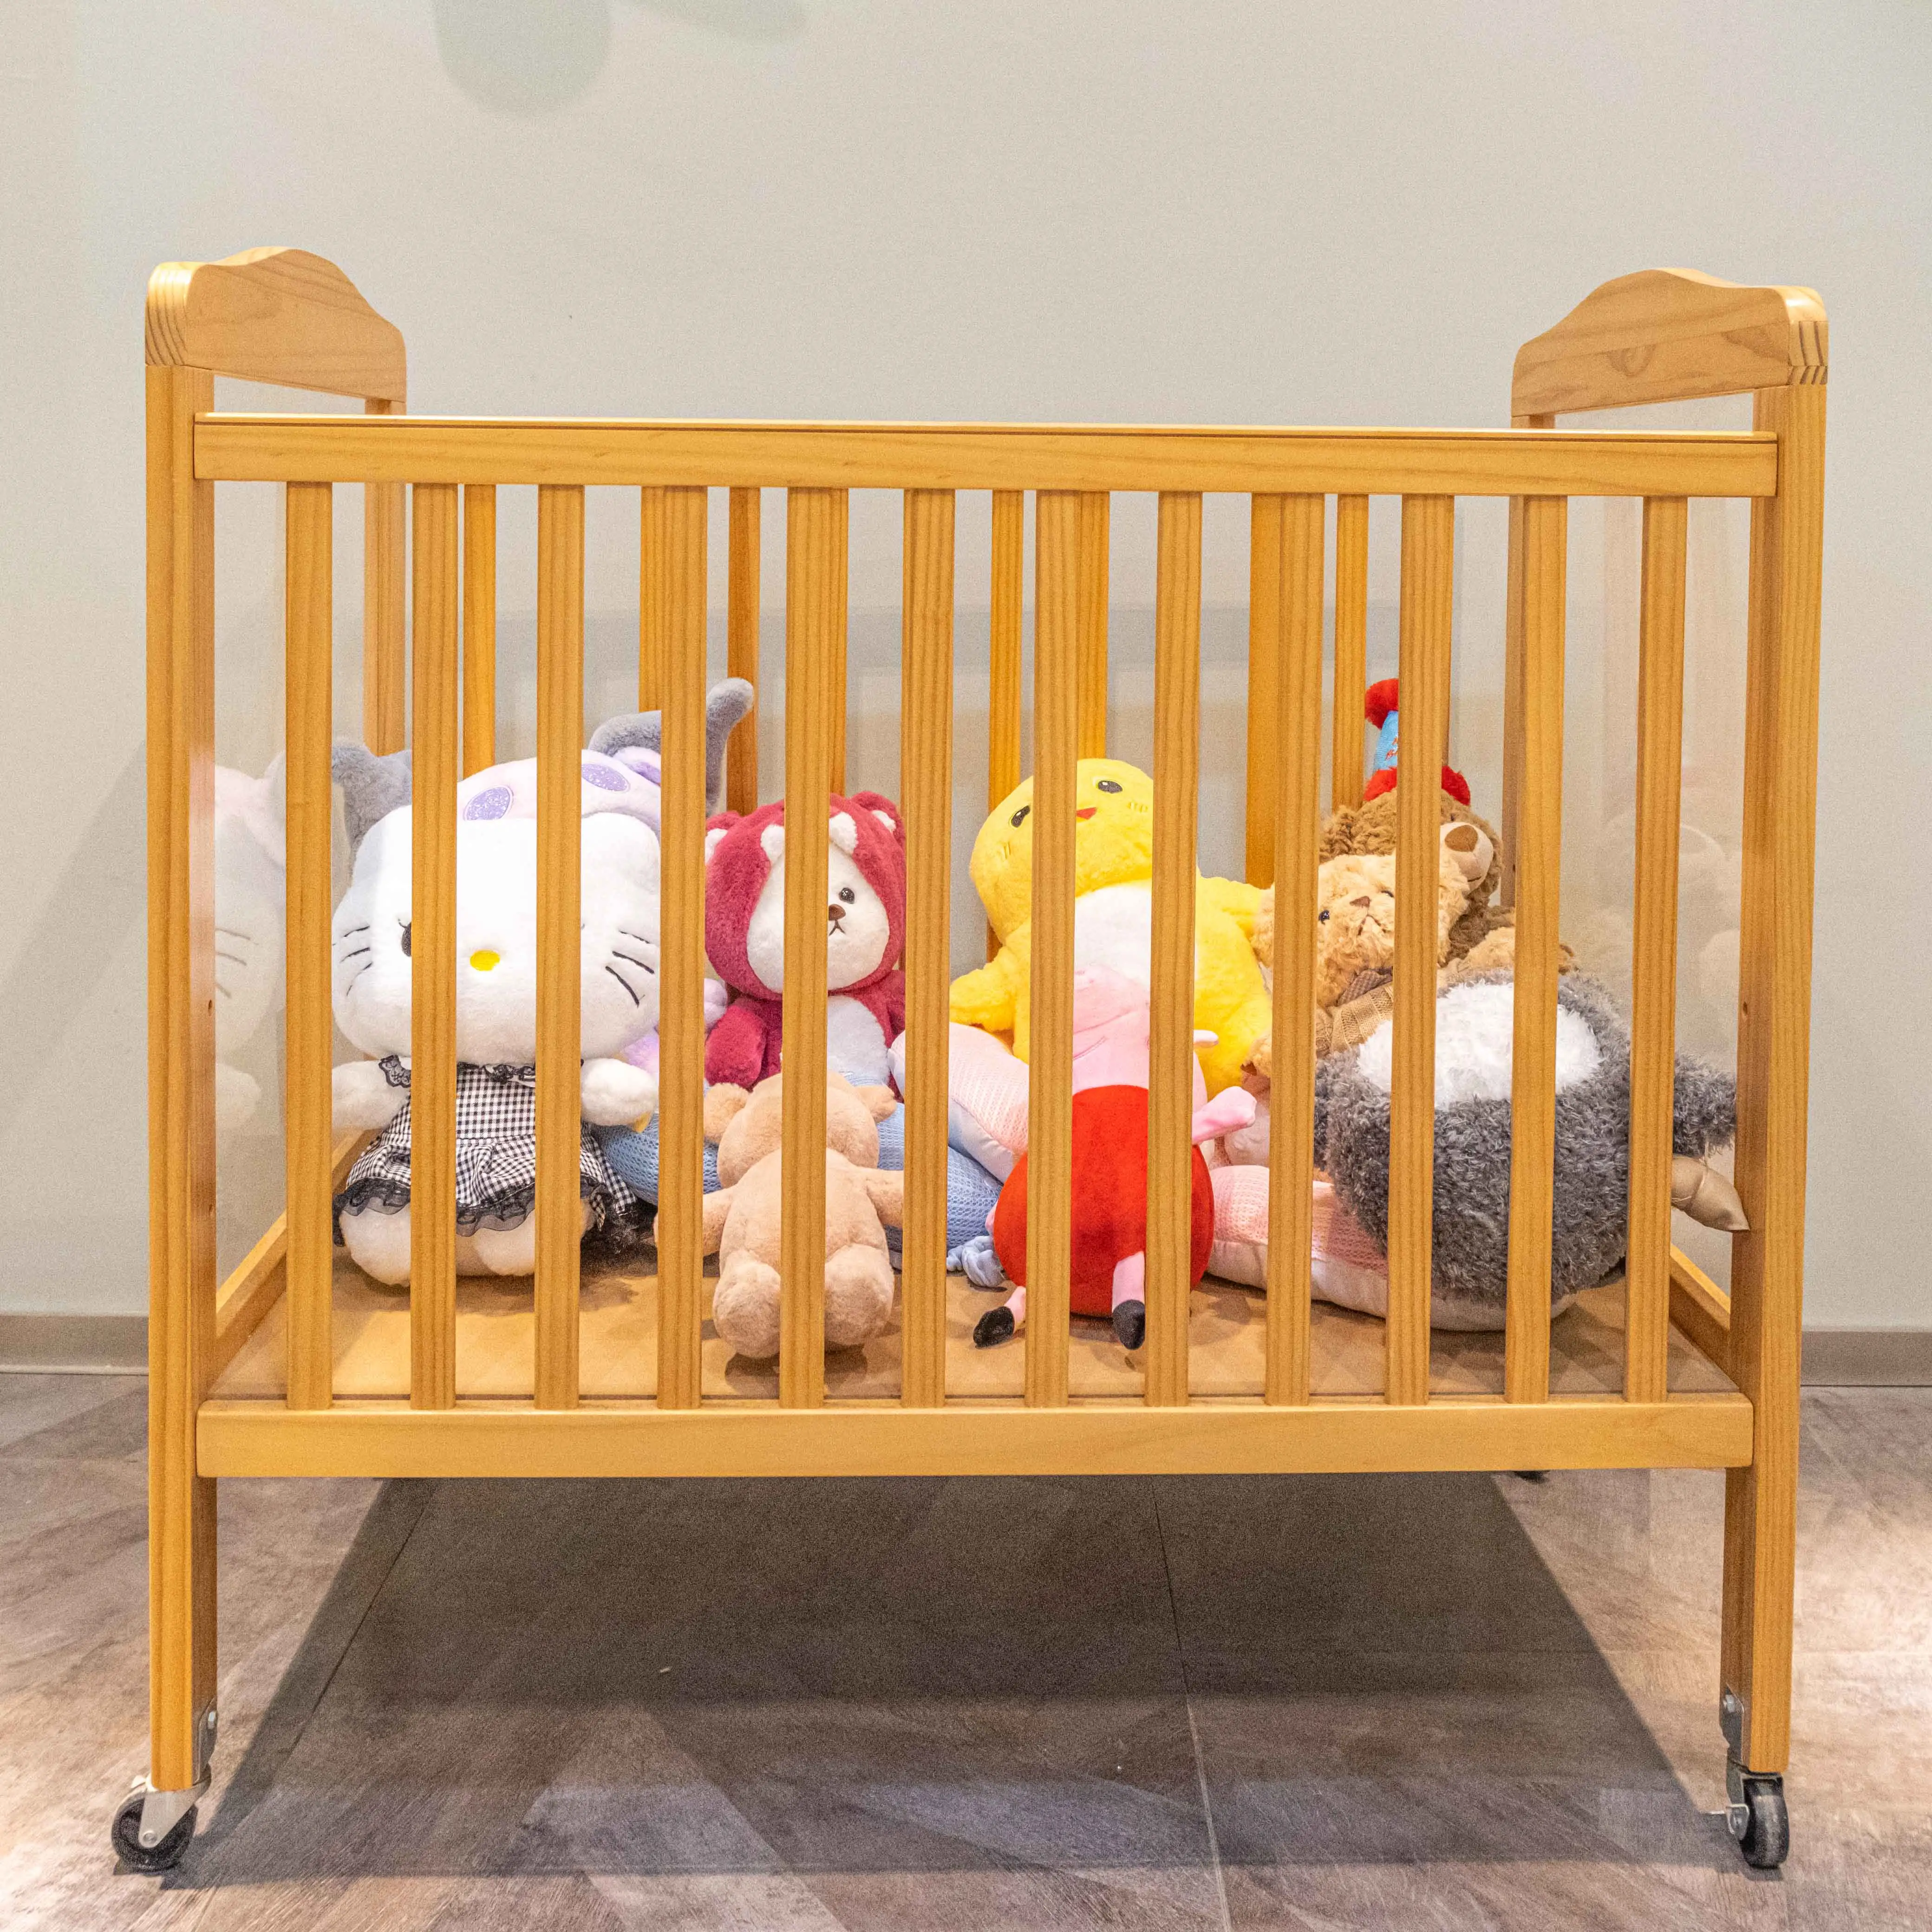 أسرّة أطفال AiLiKEA متعددة الوظائف 8 في 1 مطابقة للمواصفات الأوروبية EN 716 سرير أطفال بسيط بمفردات وسرائر خشبية منزلية للعب للأطفال